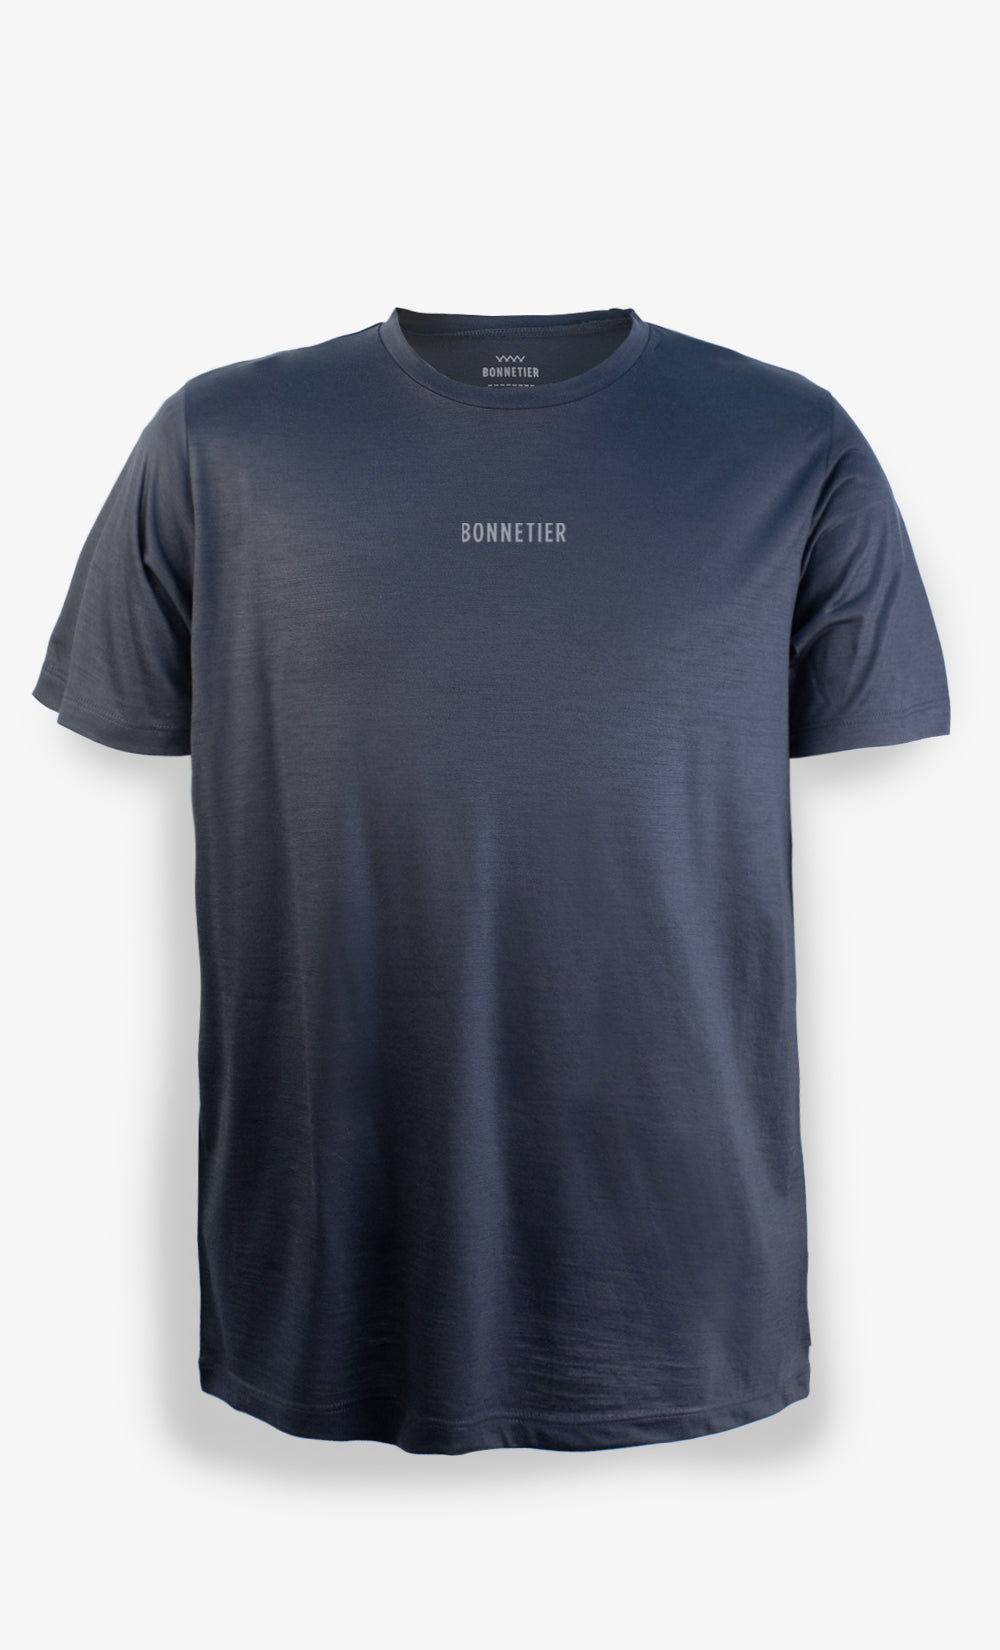 Ultra Light Charcoal Men's Merino T-Shirt - Bonnetier